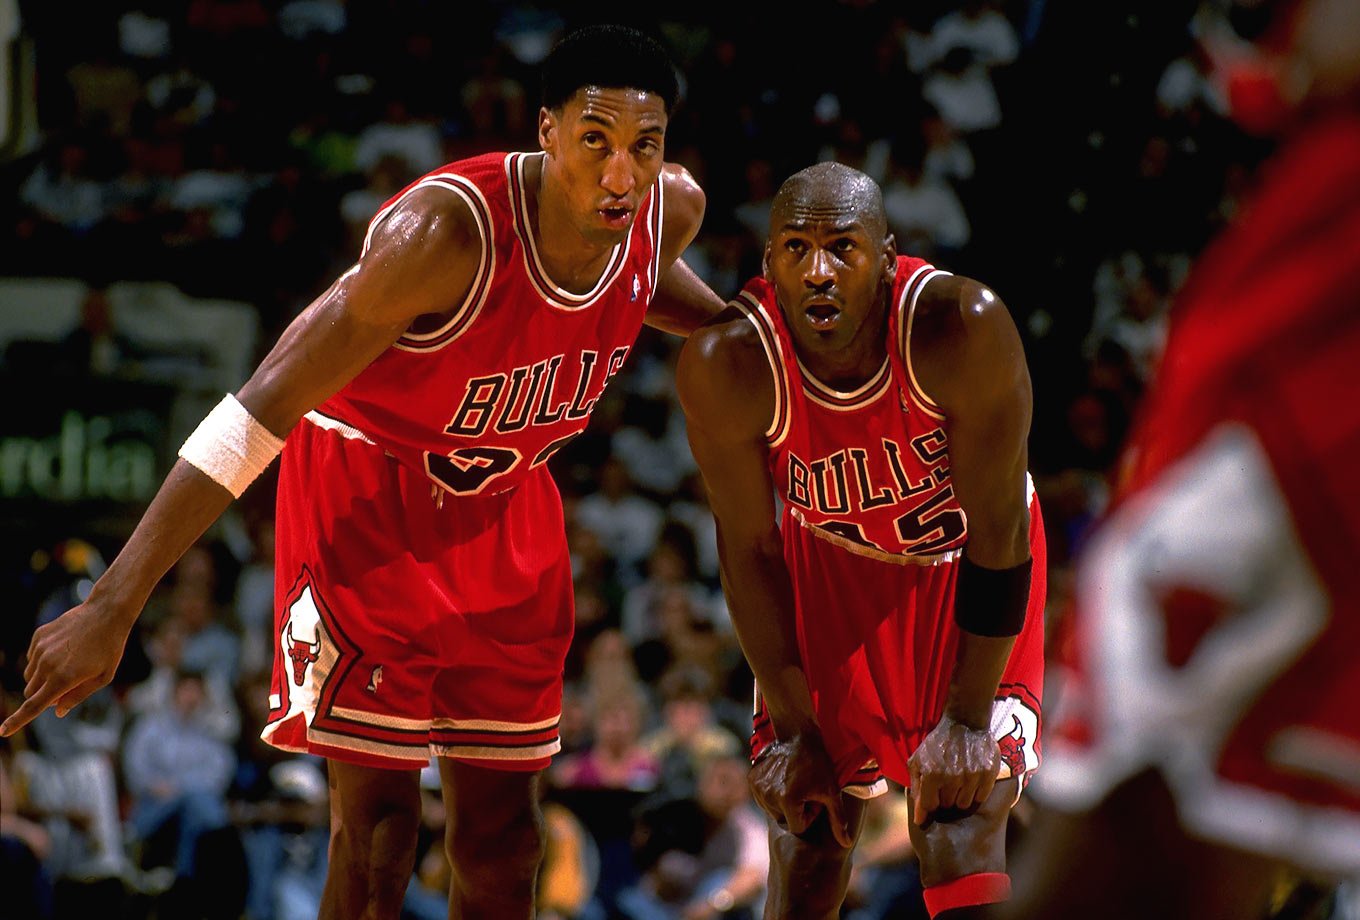 eperditshme.al | Michael Jordan i brengosur: Shumë shpejt do të ...